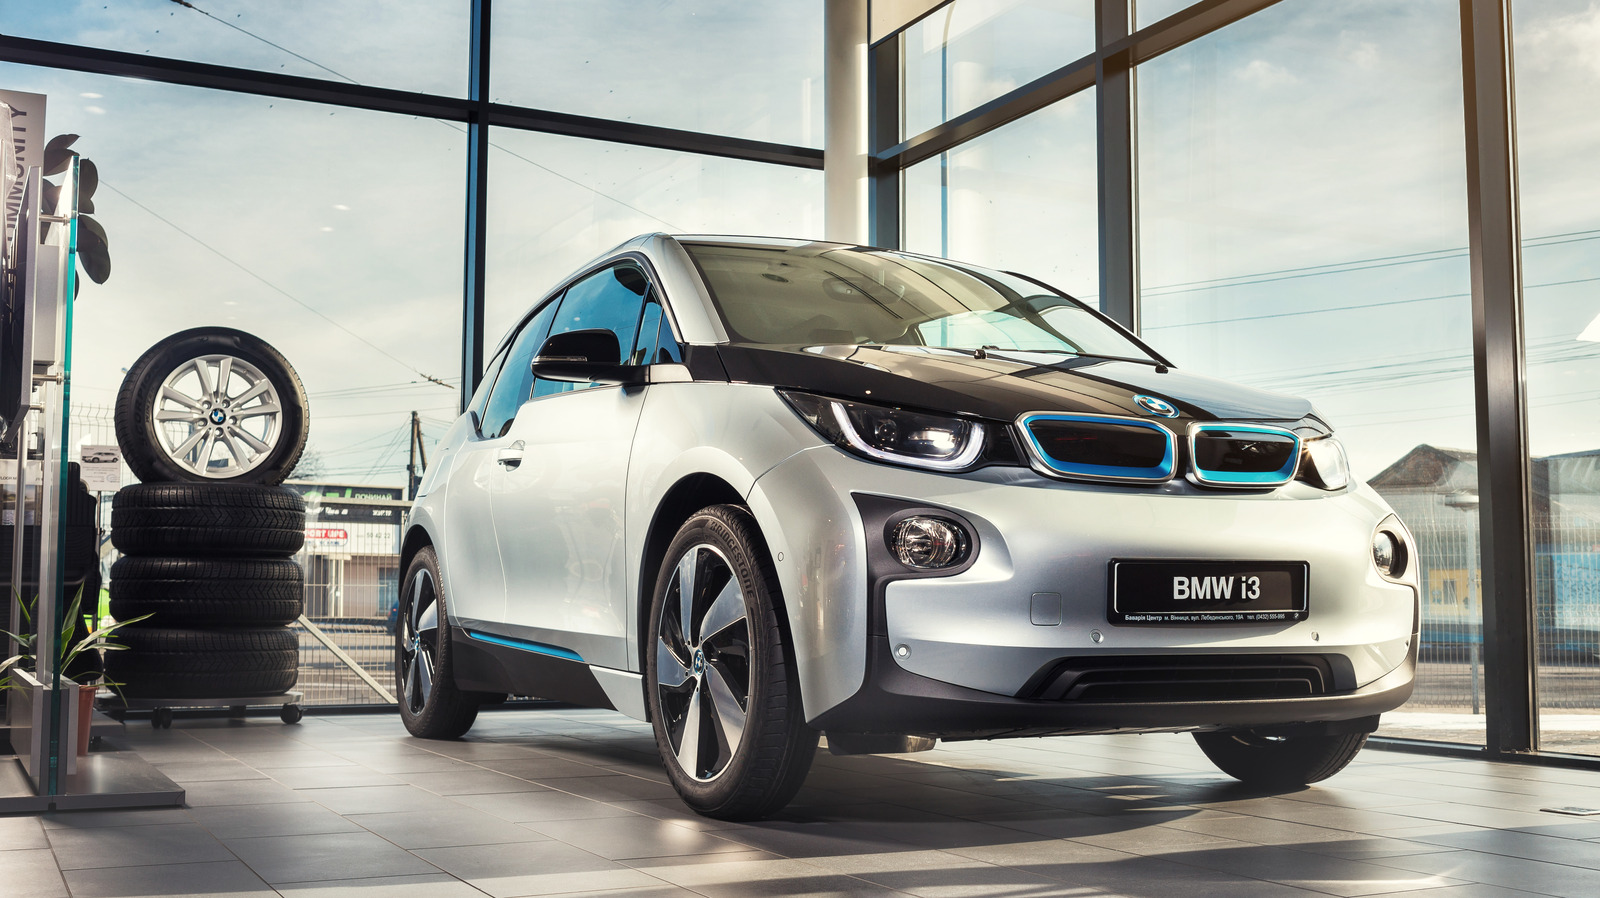 Nuôi xe điện thế này thì không rẻ: Chủ xe BMW tốn gần 1,7 tỷ đồng thay pin, đắt hơn mua xe mới- Ảnh 1.